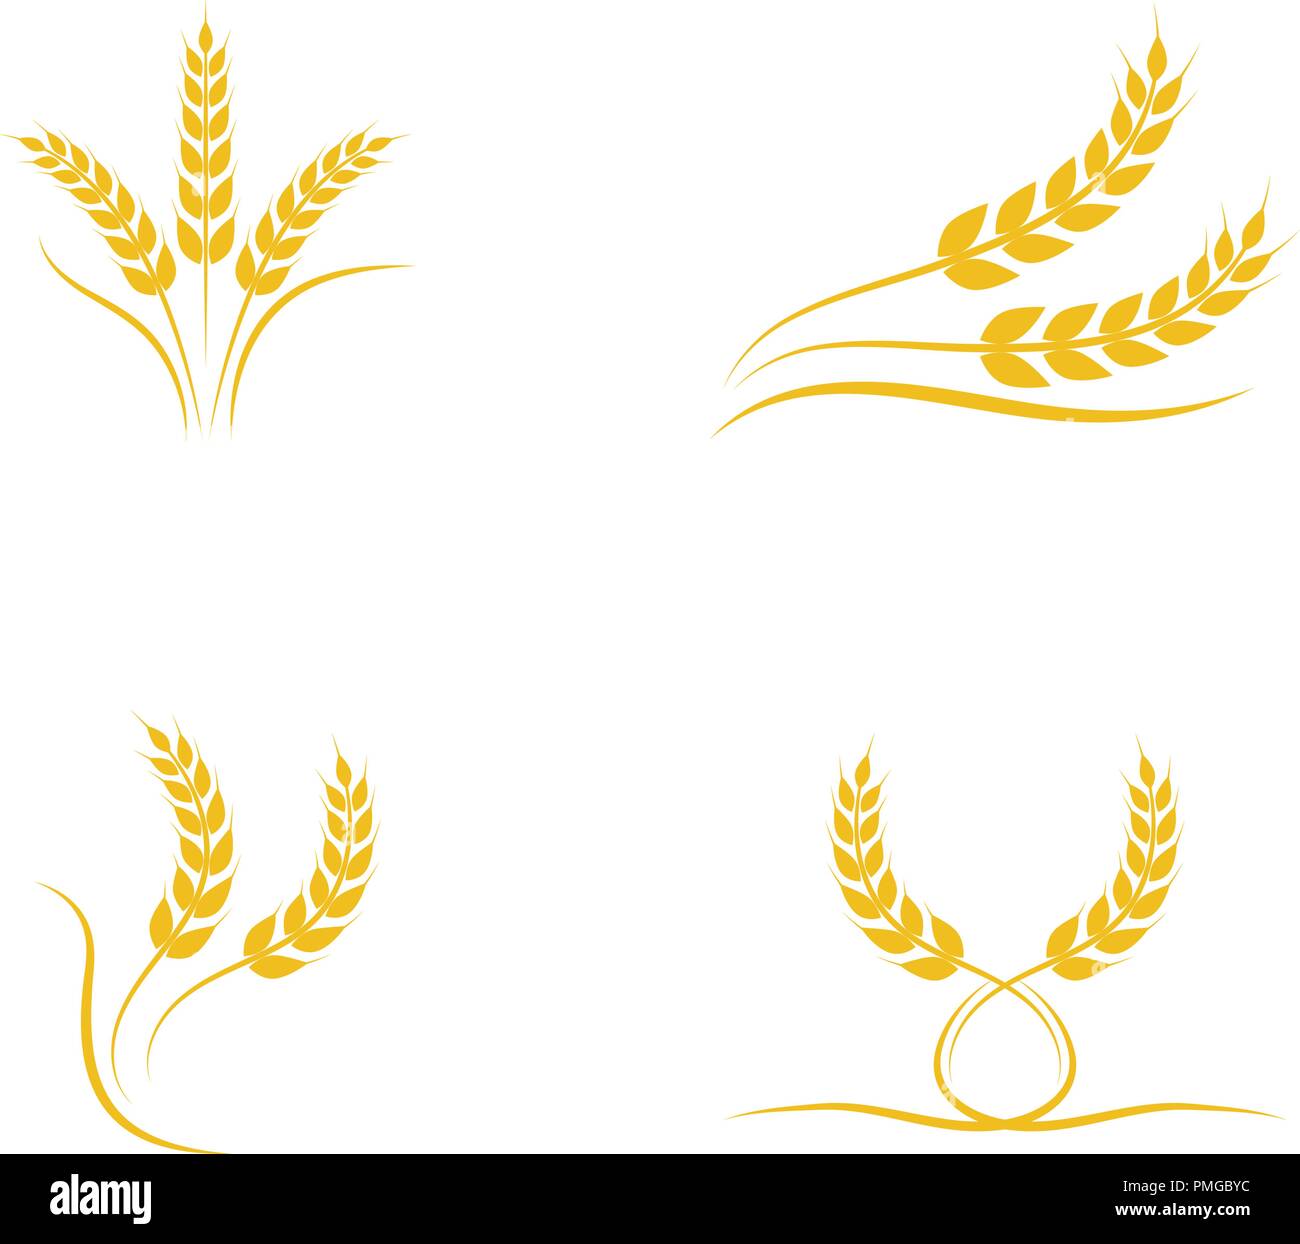 Landwirtschaft Weizen Logo Vorlage vektor Icon Design Stock Vektor